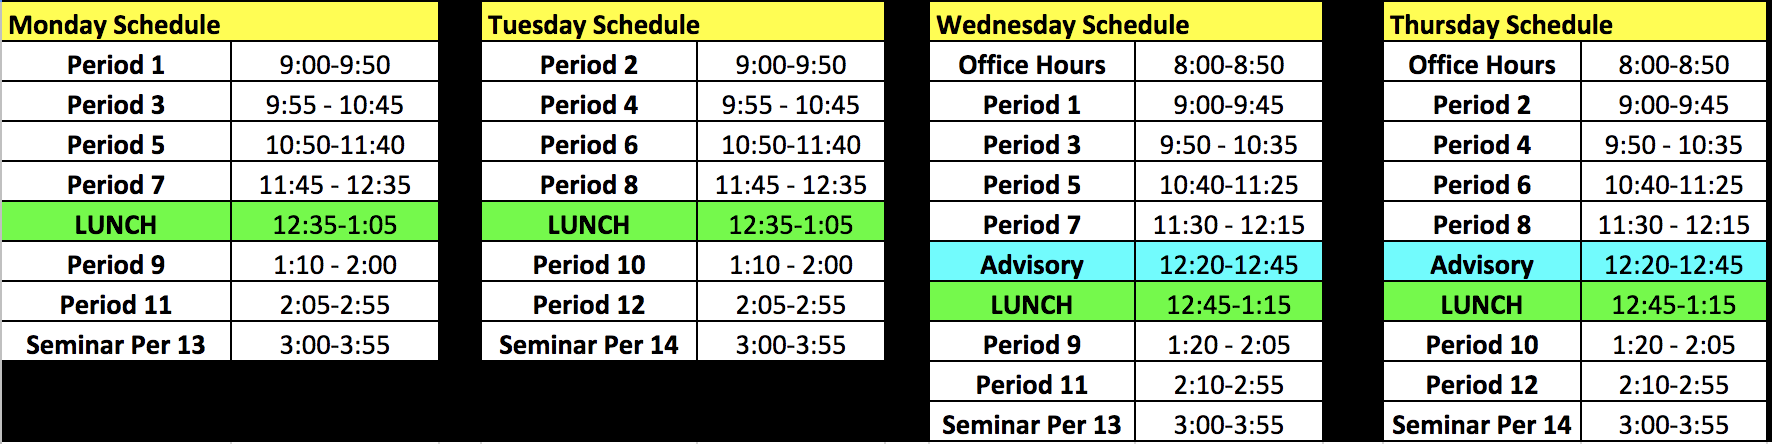 PD Week Bell Schedule